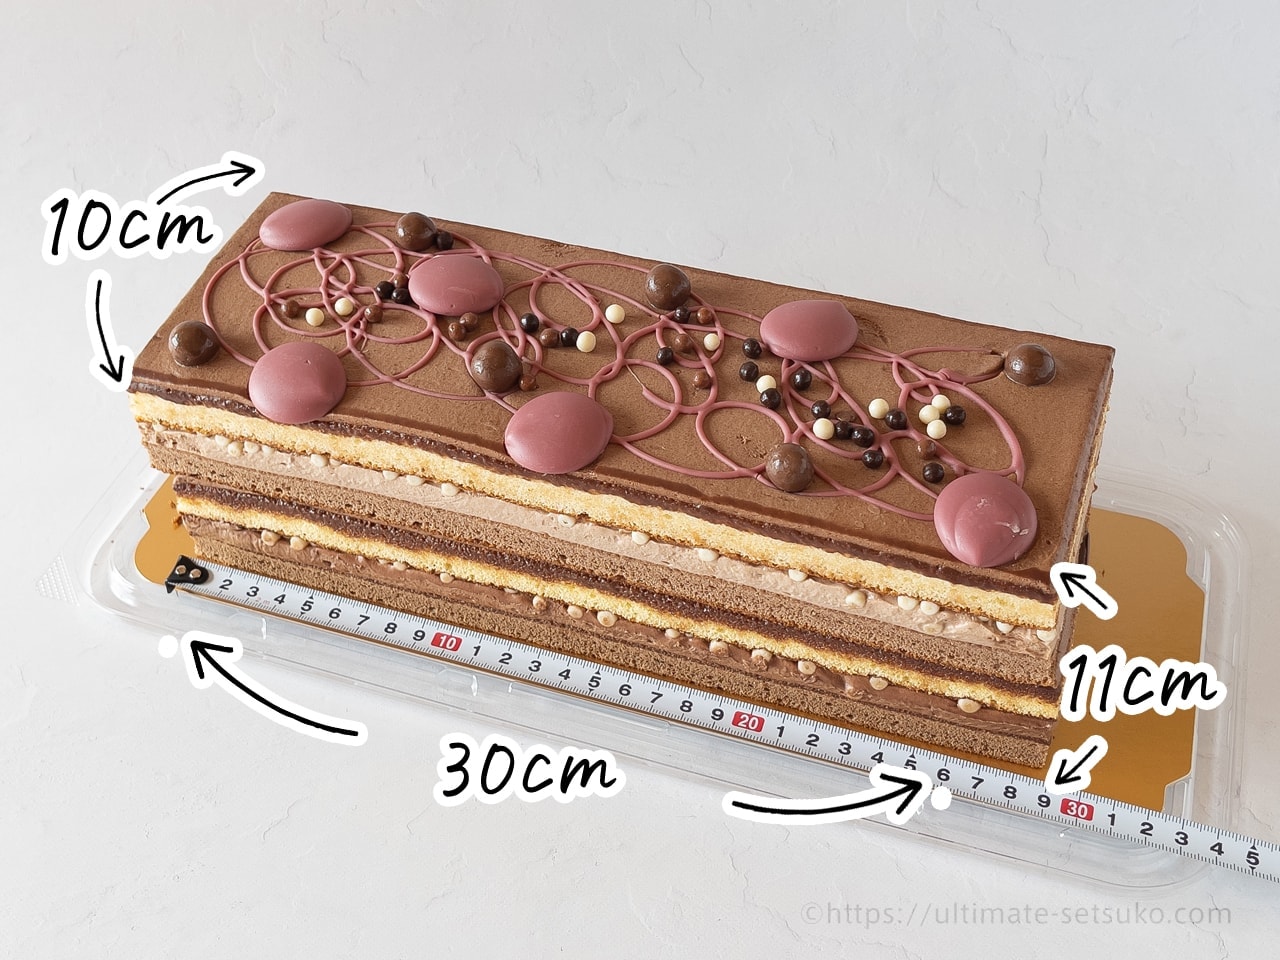 コストコの4種のチョコレートケーキが超おいしい ルビーチョコを使った贅沢な一品